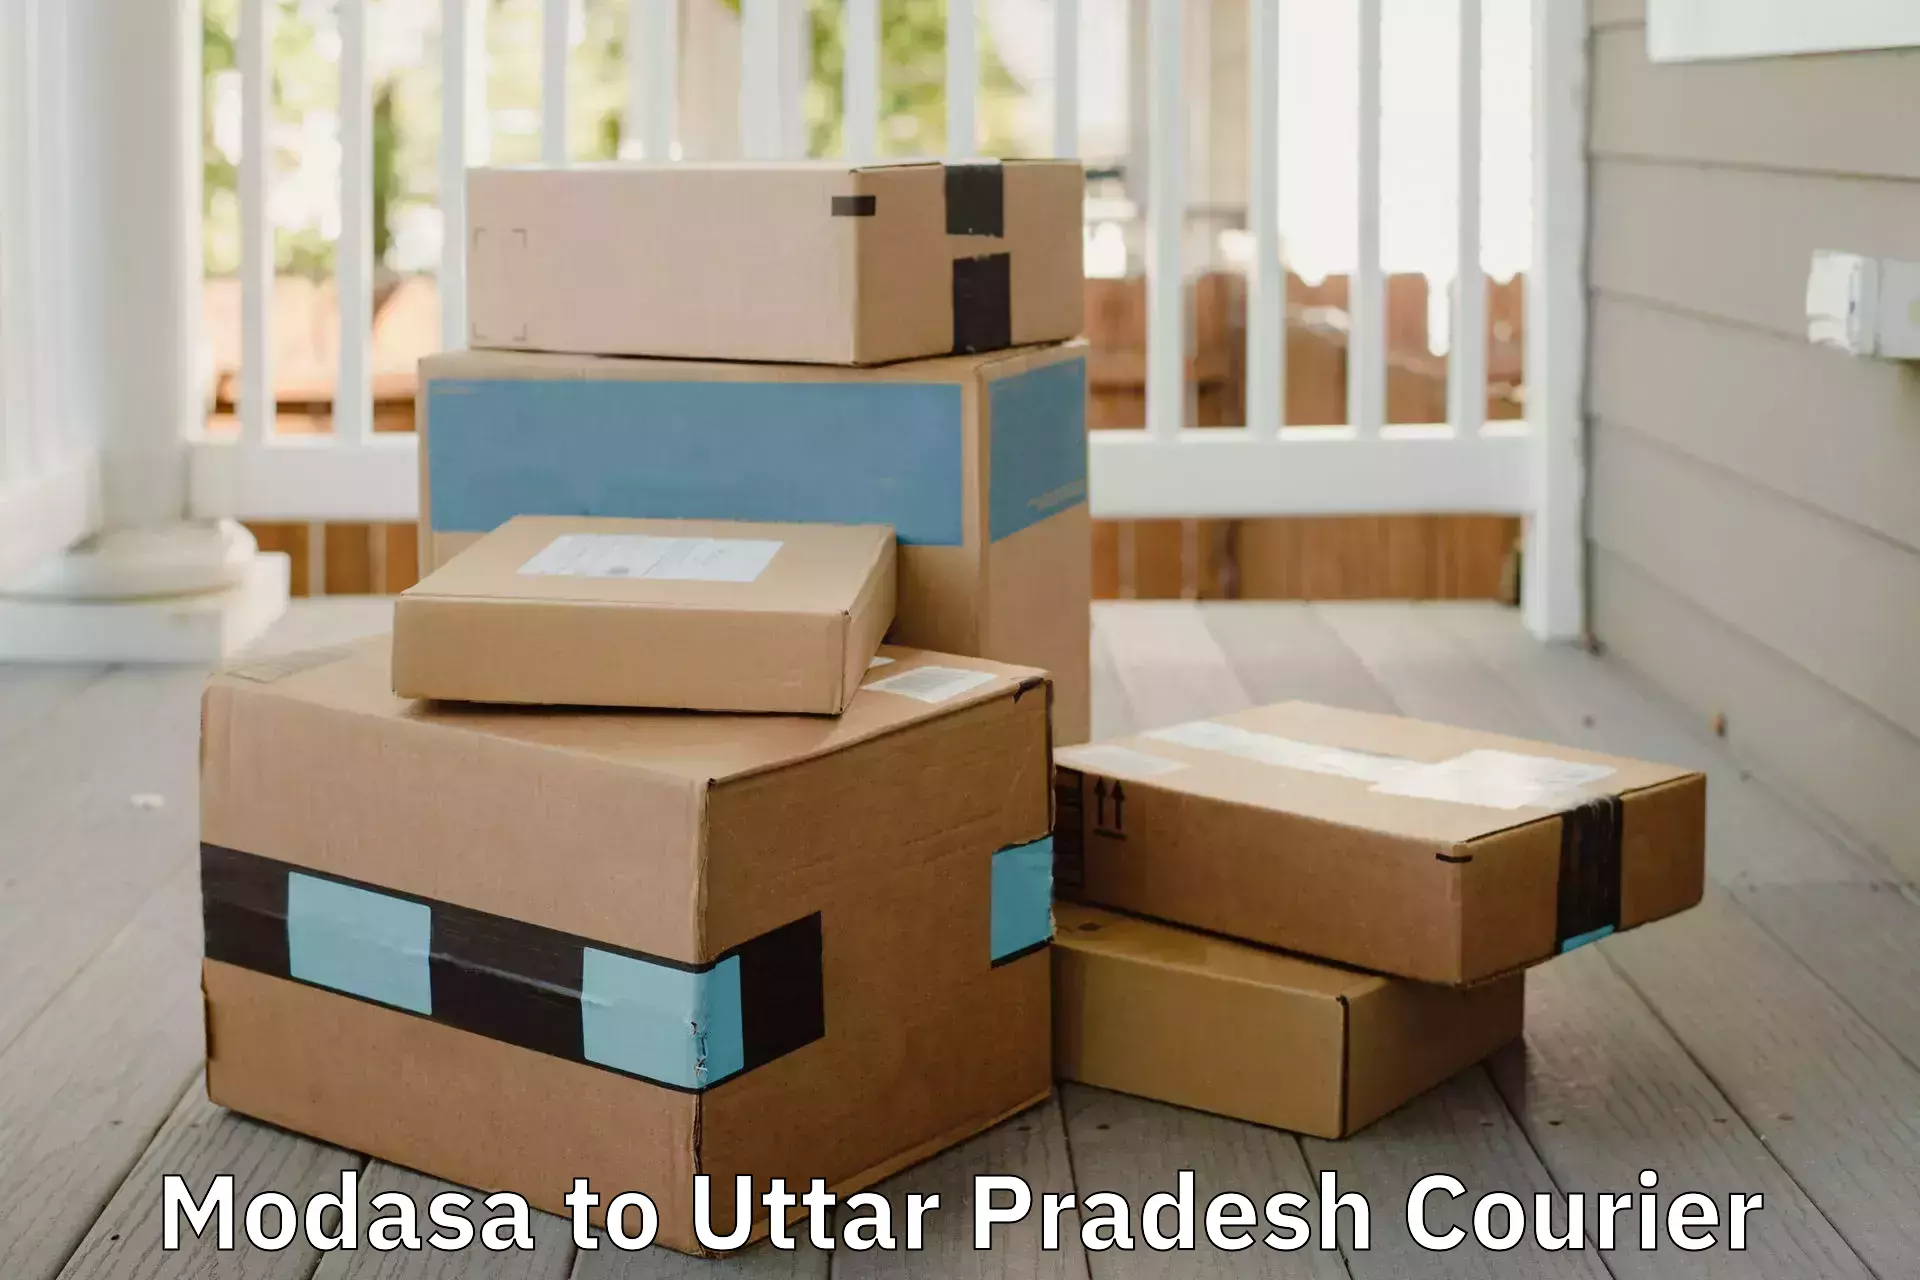 Furniture delivery service Modasa to Chandpur